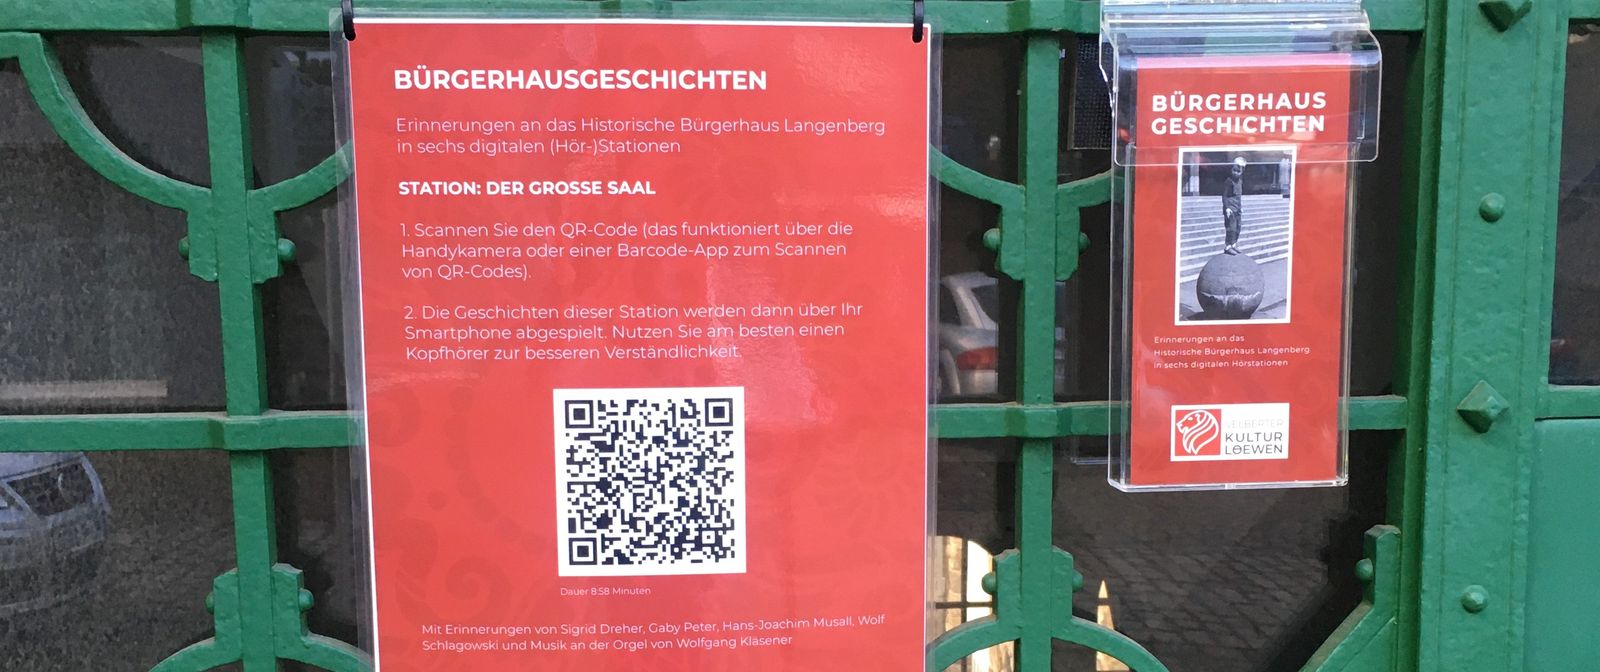 Ein rotes Plakat mit der Aufschrift "Bürgerhausgeschichten. Erinnerung an das historische Bürgerhaus Langenberg in sechs digitalen (Hör-)Stationen. Station 1: Der große Saal". Darunter befindet sich ein QR-Code. Rechts vom Plakat ist eine Acryl-Halterung mit Flyern zum Projekt aufgehangen.